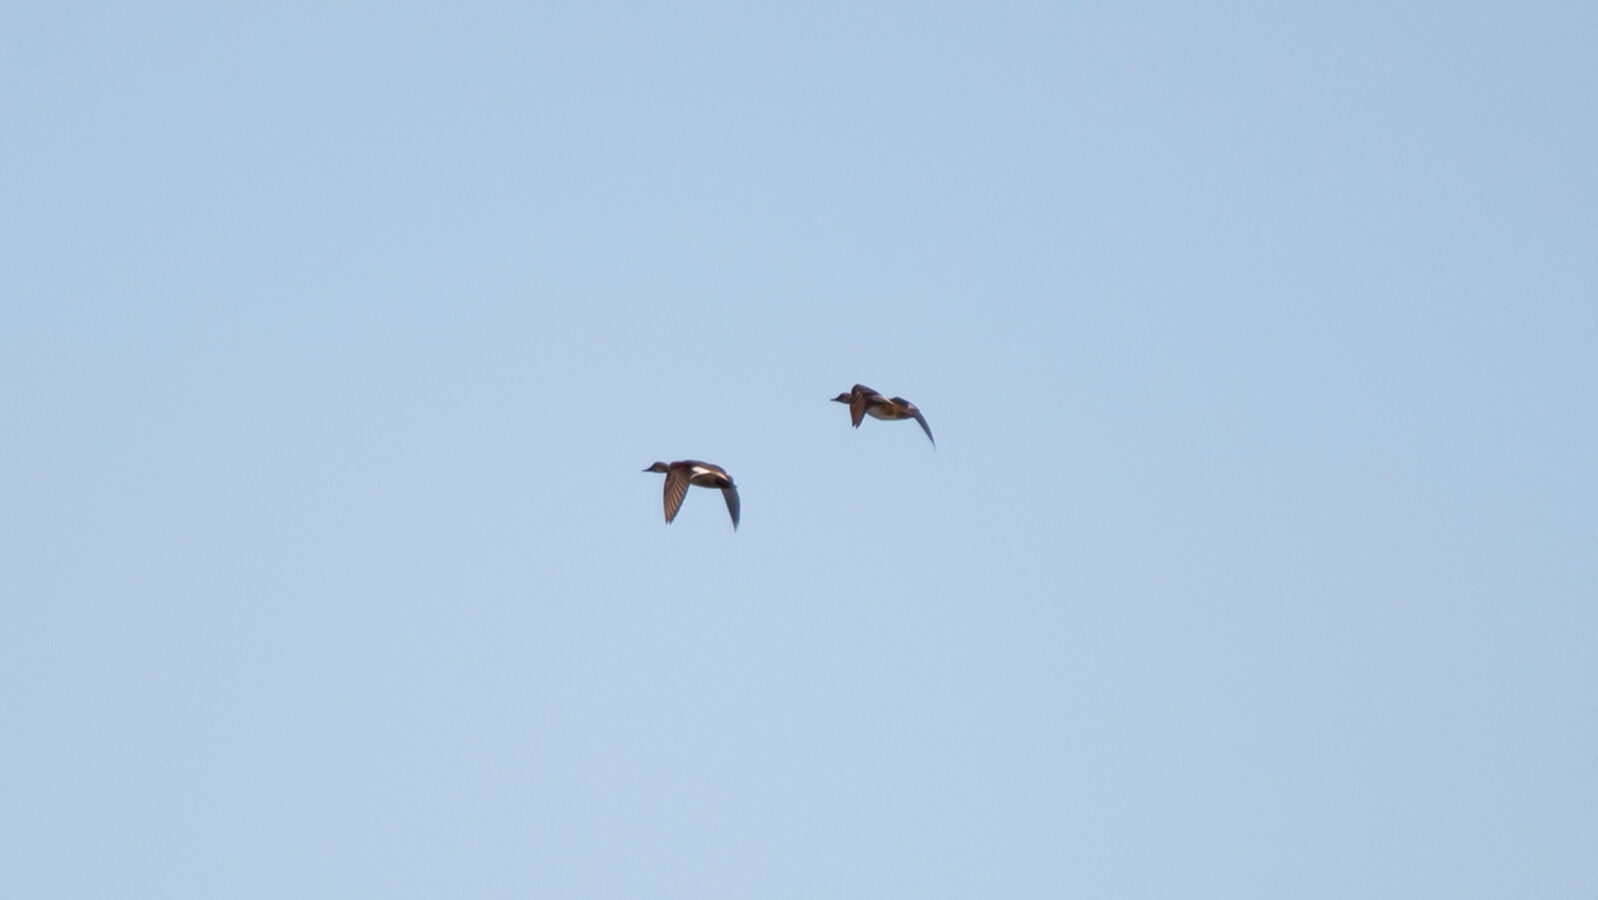 Gadwall ducks flying in the sky